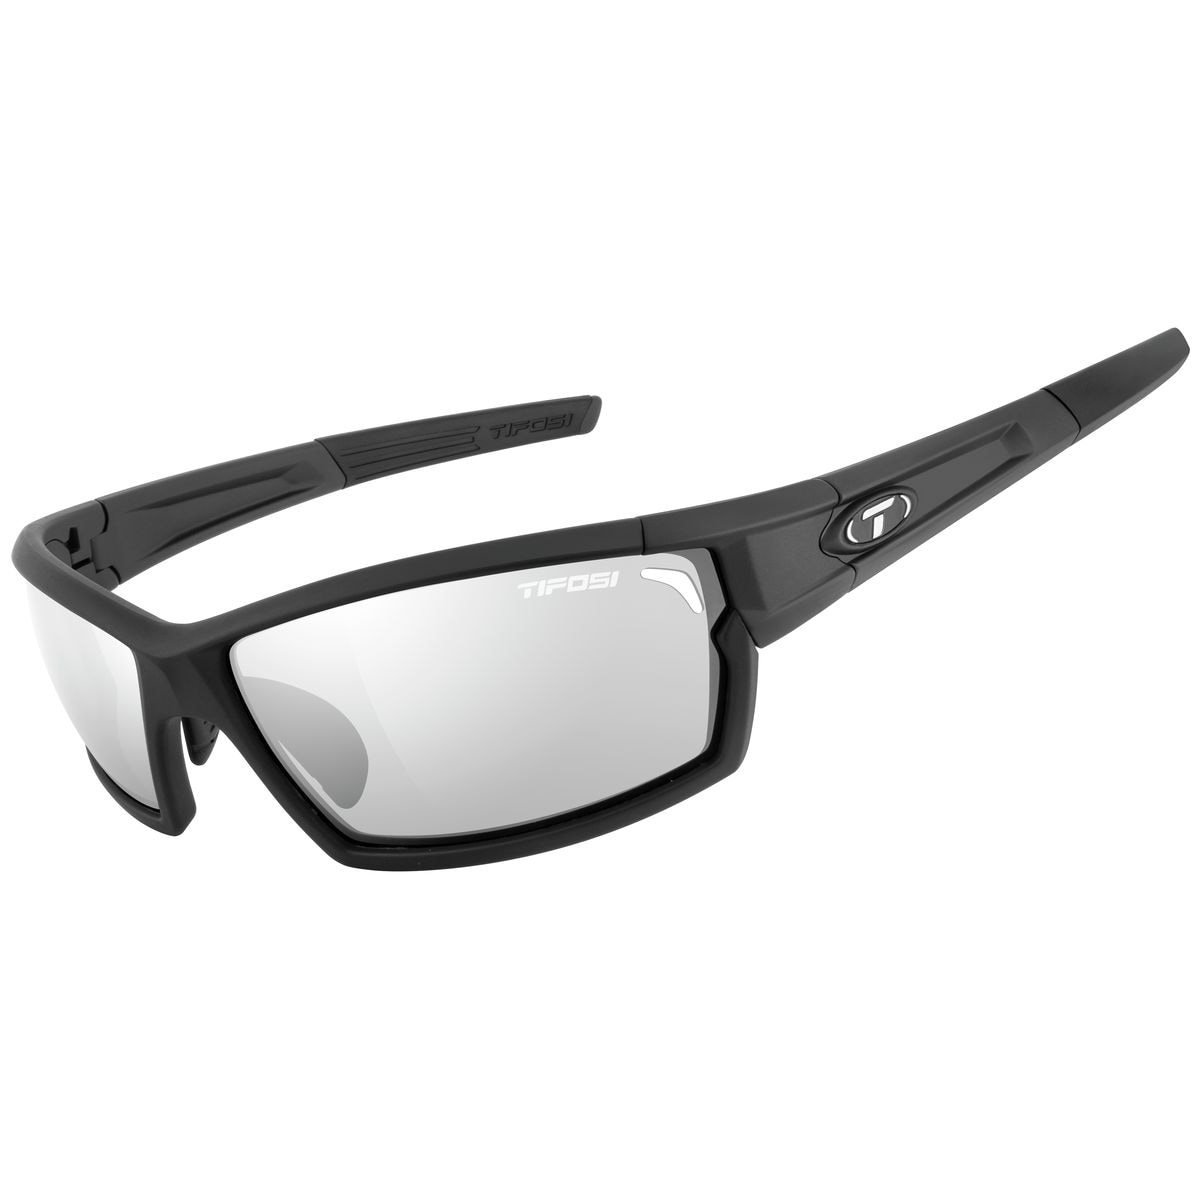 Tifosi Optics Escalate FH Photochromic Sunglasses Mens